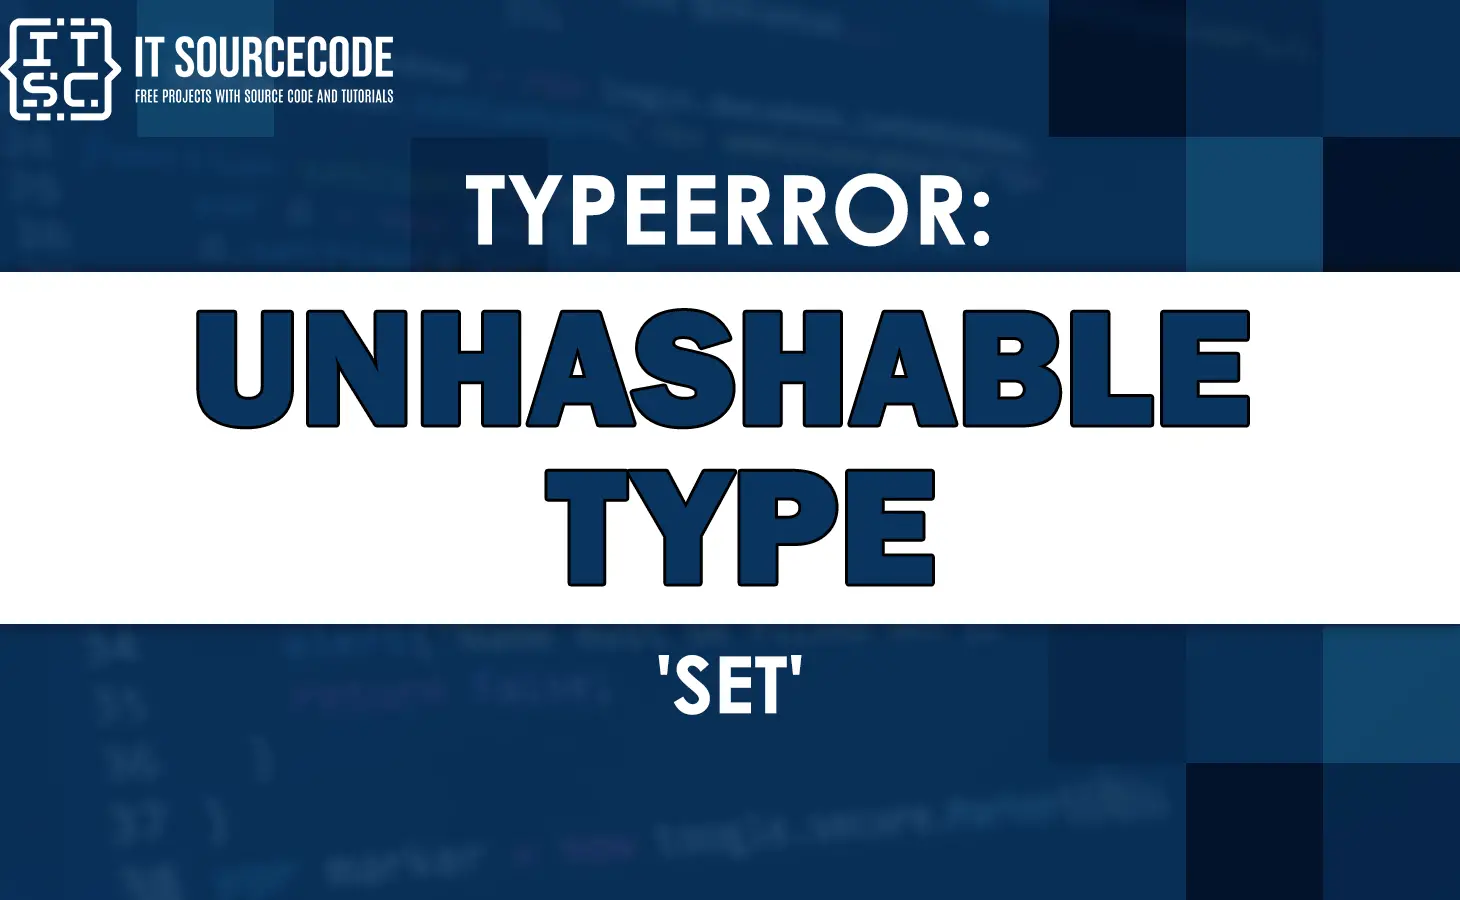 Typeerror unhashable type set [SOLVED]